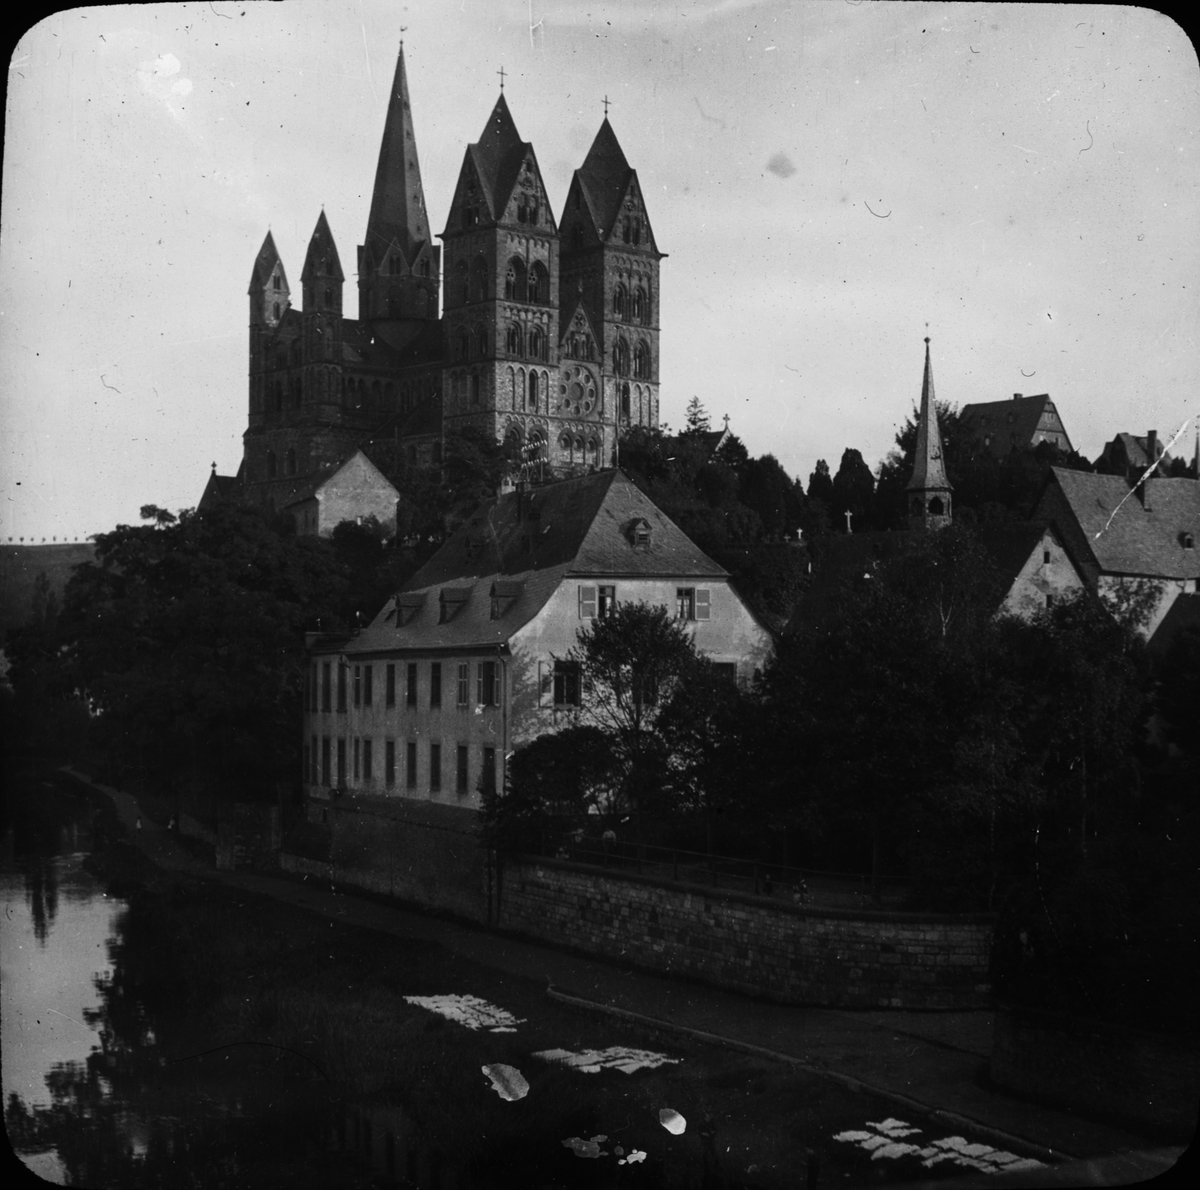 Skioptikonbild med motiv från Limburg an der Lahn med Limburger Dom på höjden.
Bilden har förvarats i kartong märkt: Resan 1908. Amberg. XXX.